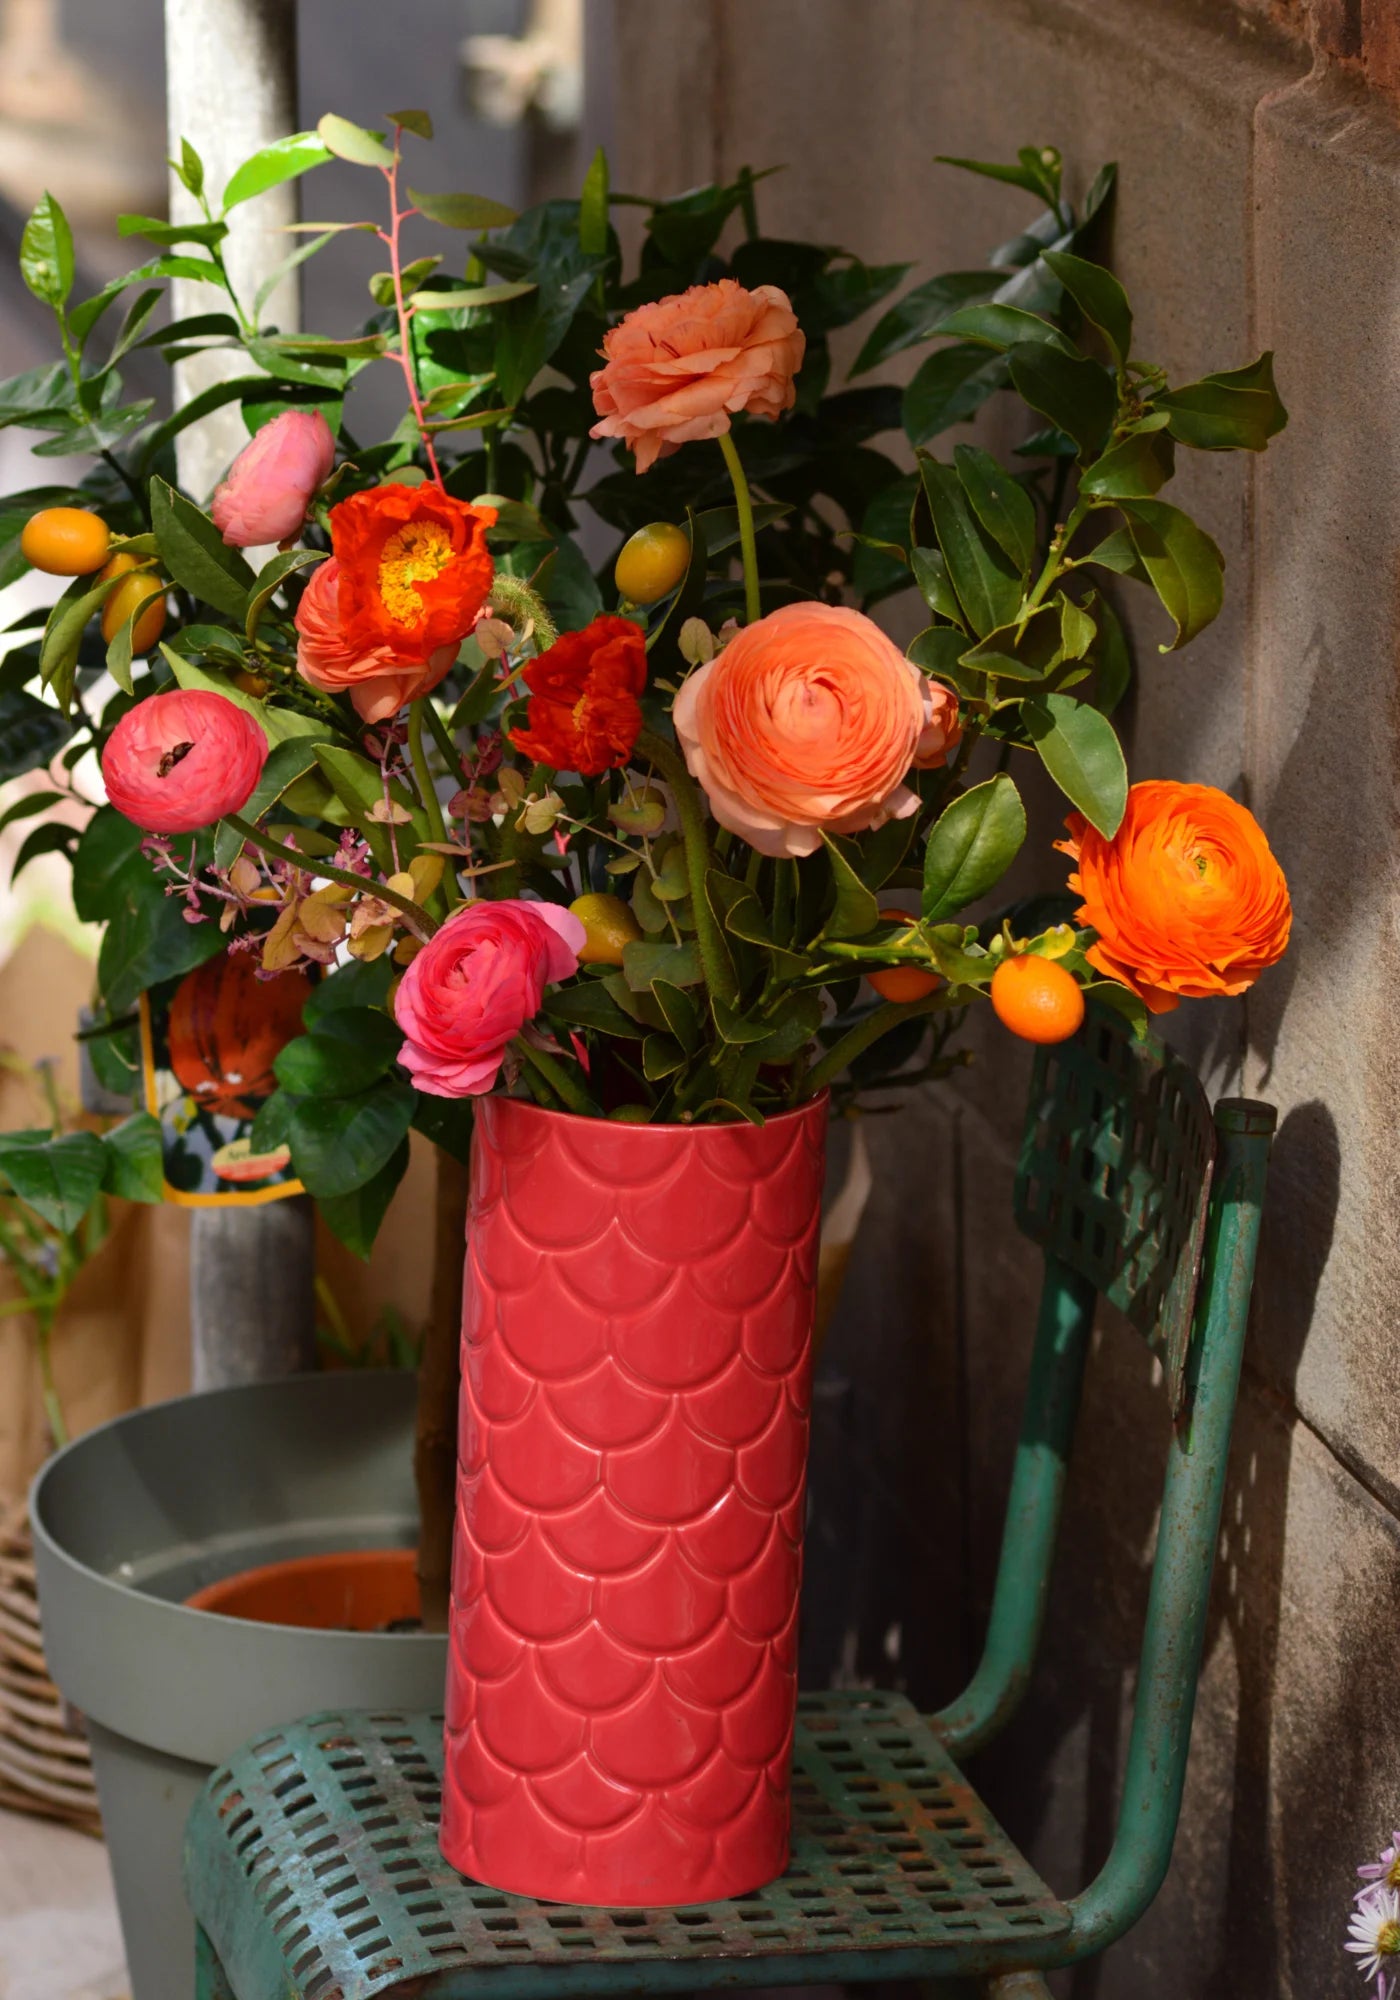 Le grand vase en Grès rose de chez Maison Marah rempli d'un bouquet de fleurs et posé sur une chaise